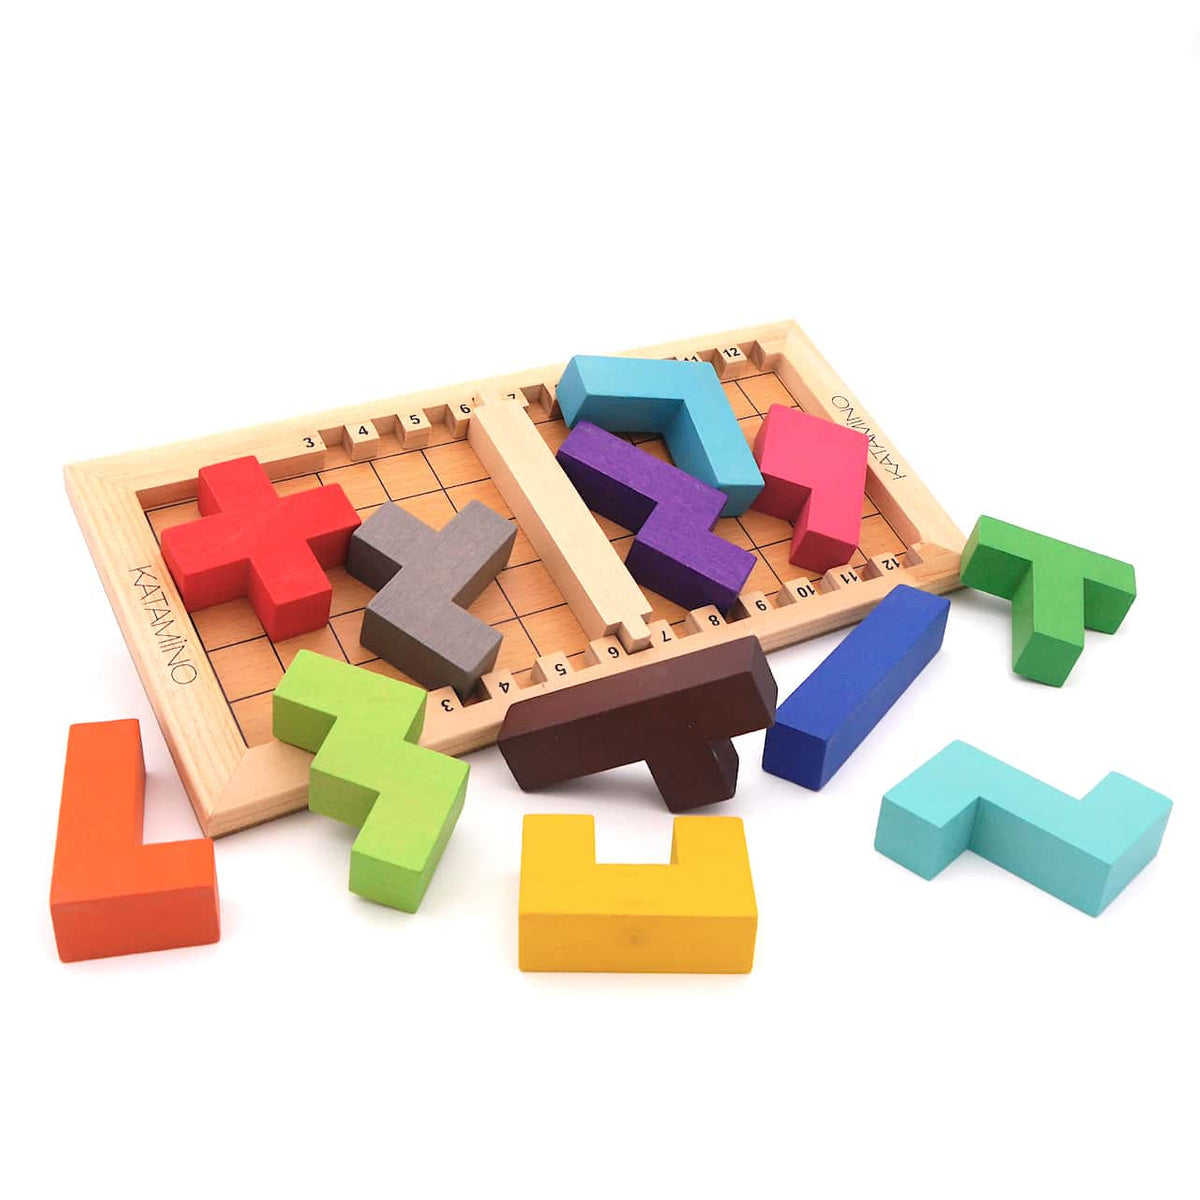 KATAMINO - großes, kniffliges Puzzlespiel für clevere Köpfe